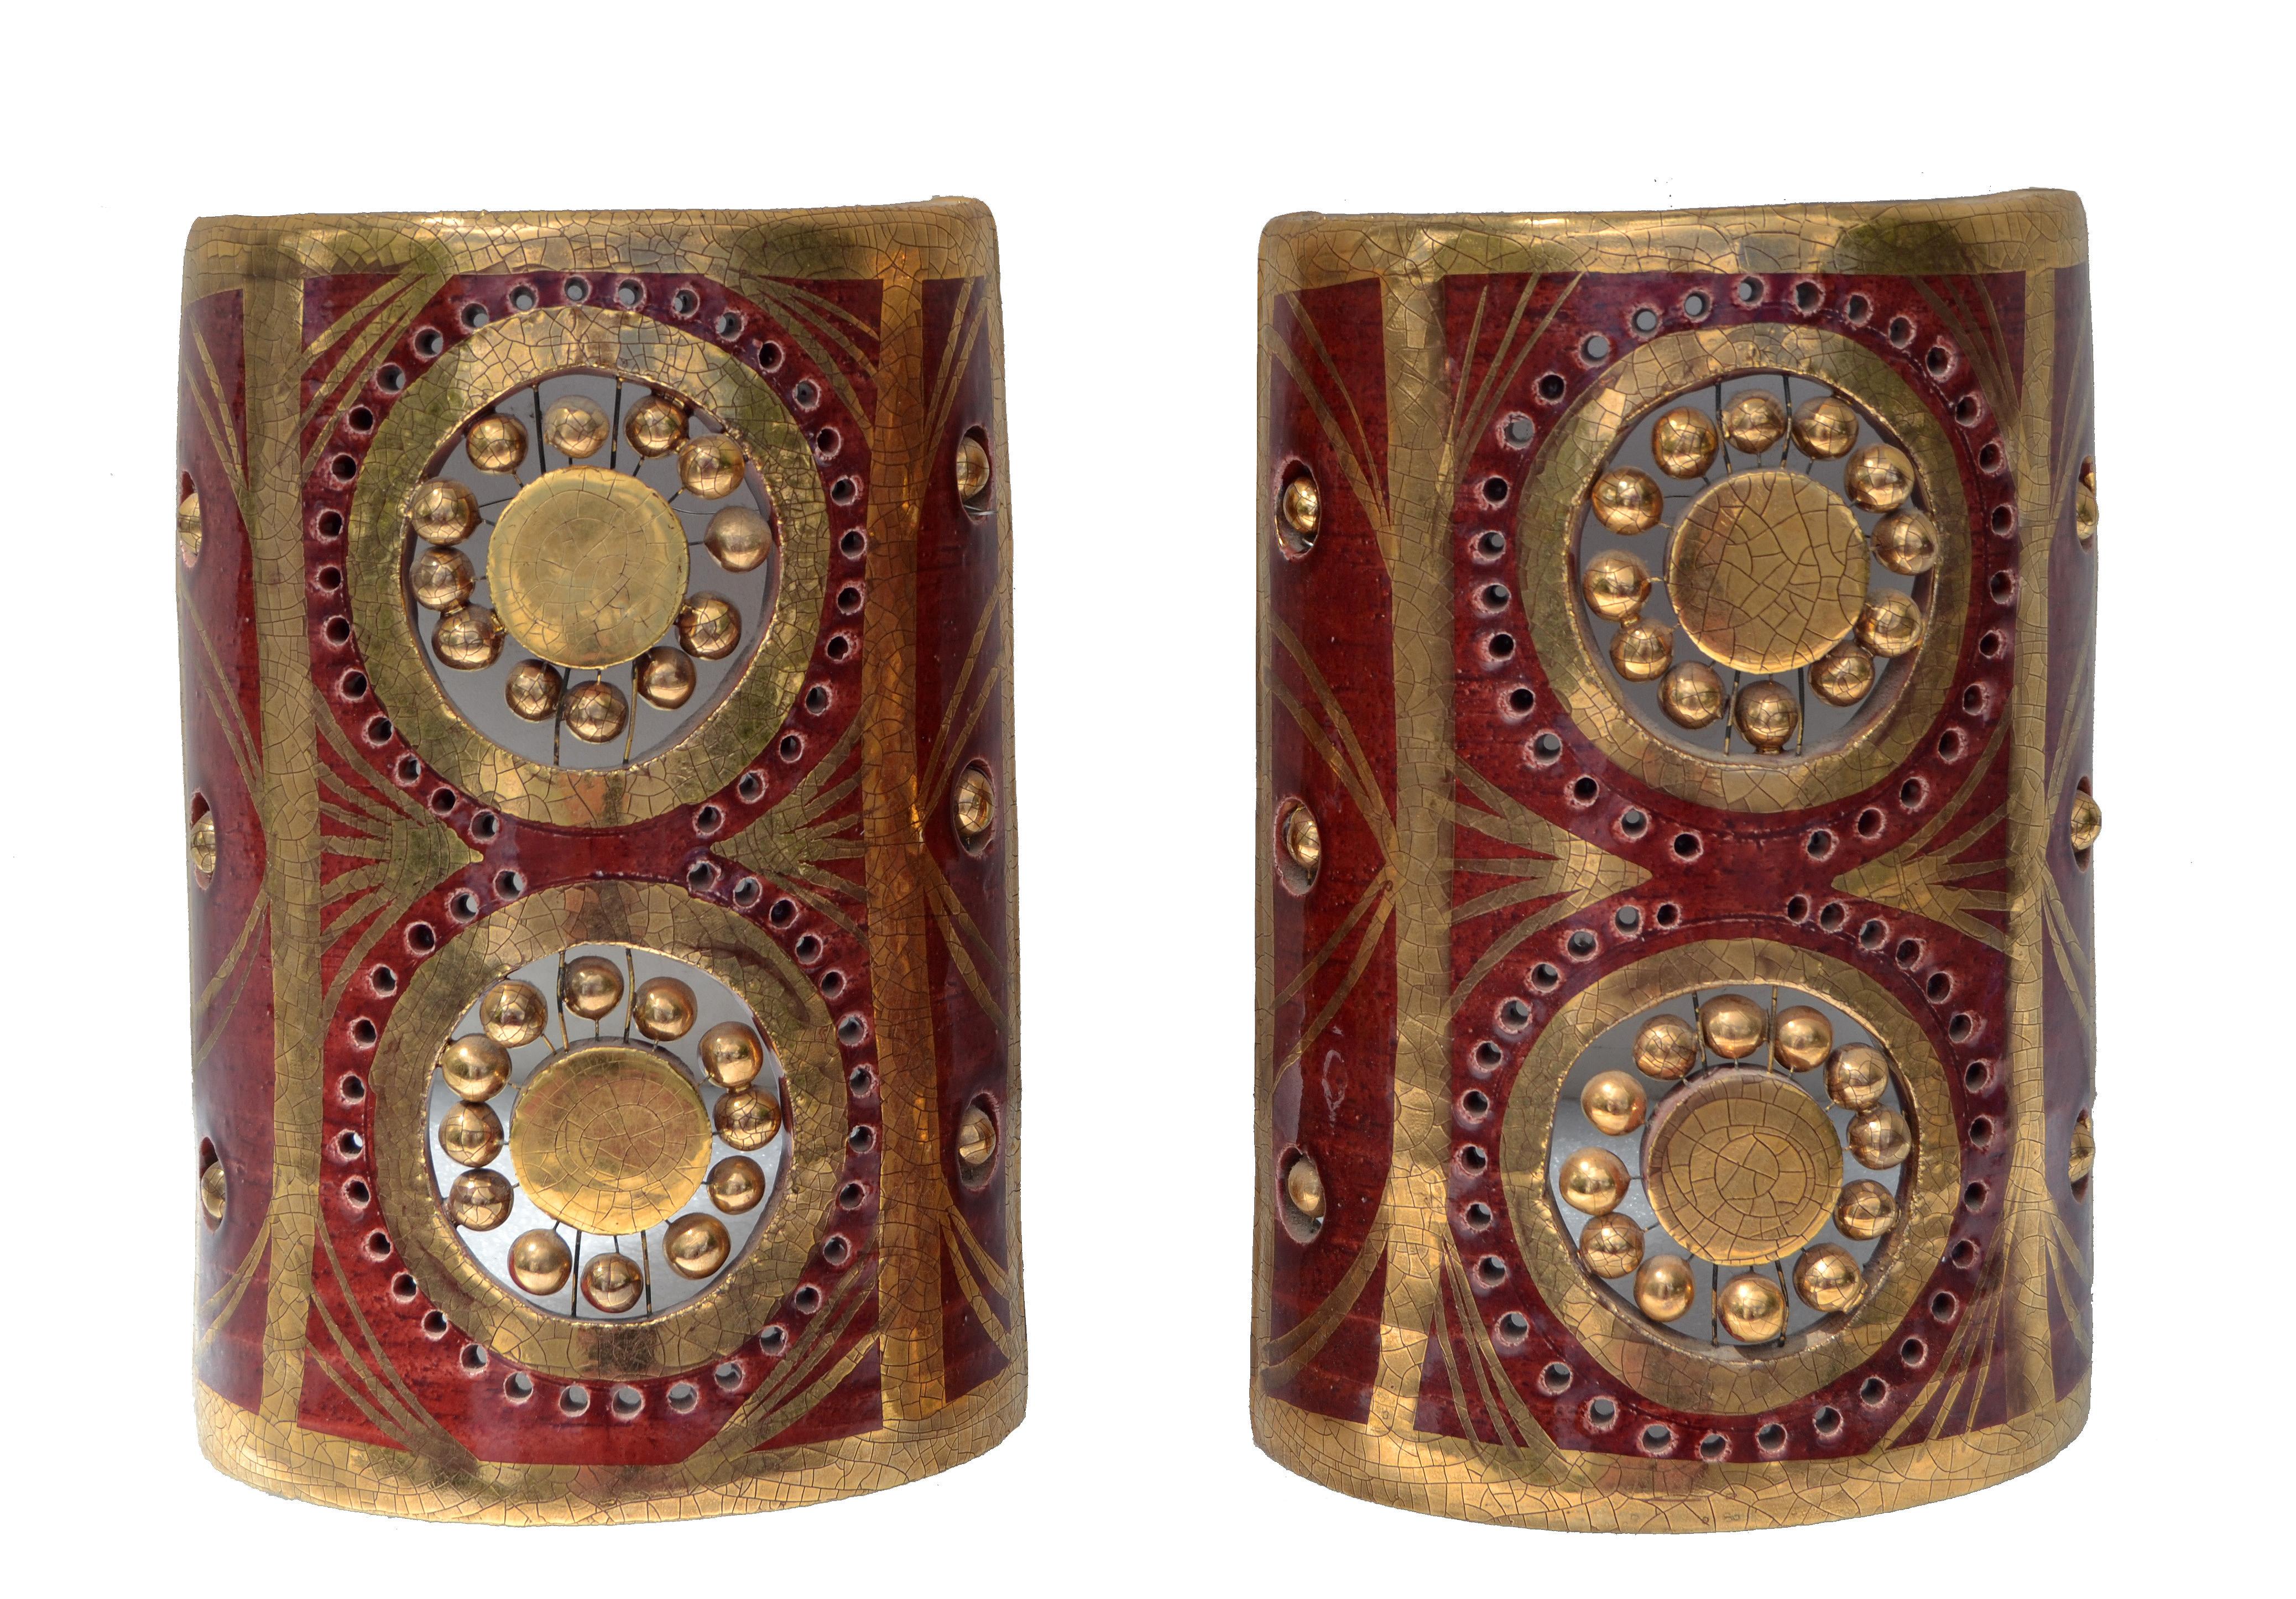 Magnifique paire d'appliques de Georges Pelletier, de Vallauris, France. 
La céramique bordeaux et dorée est très détaillée.
 